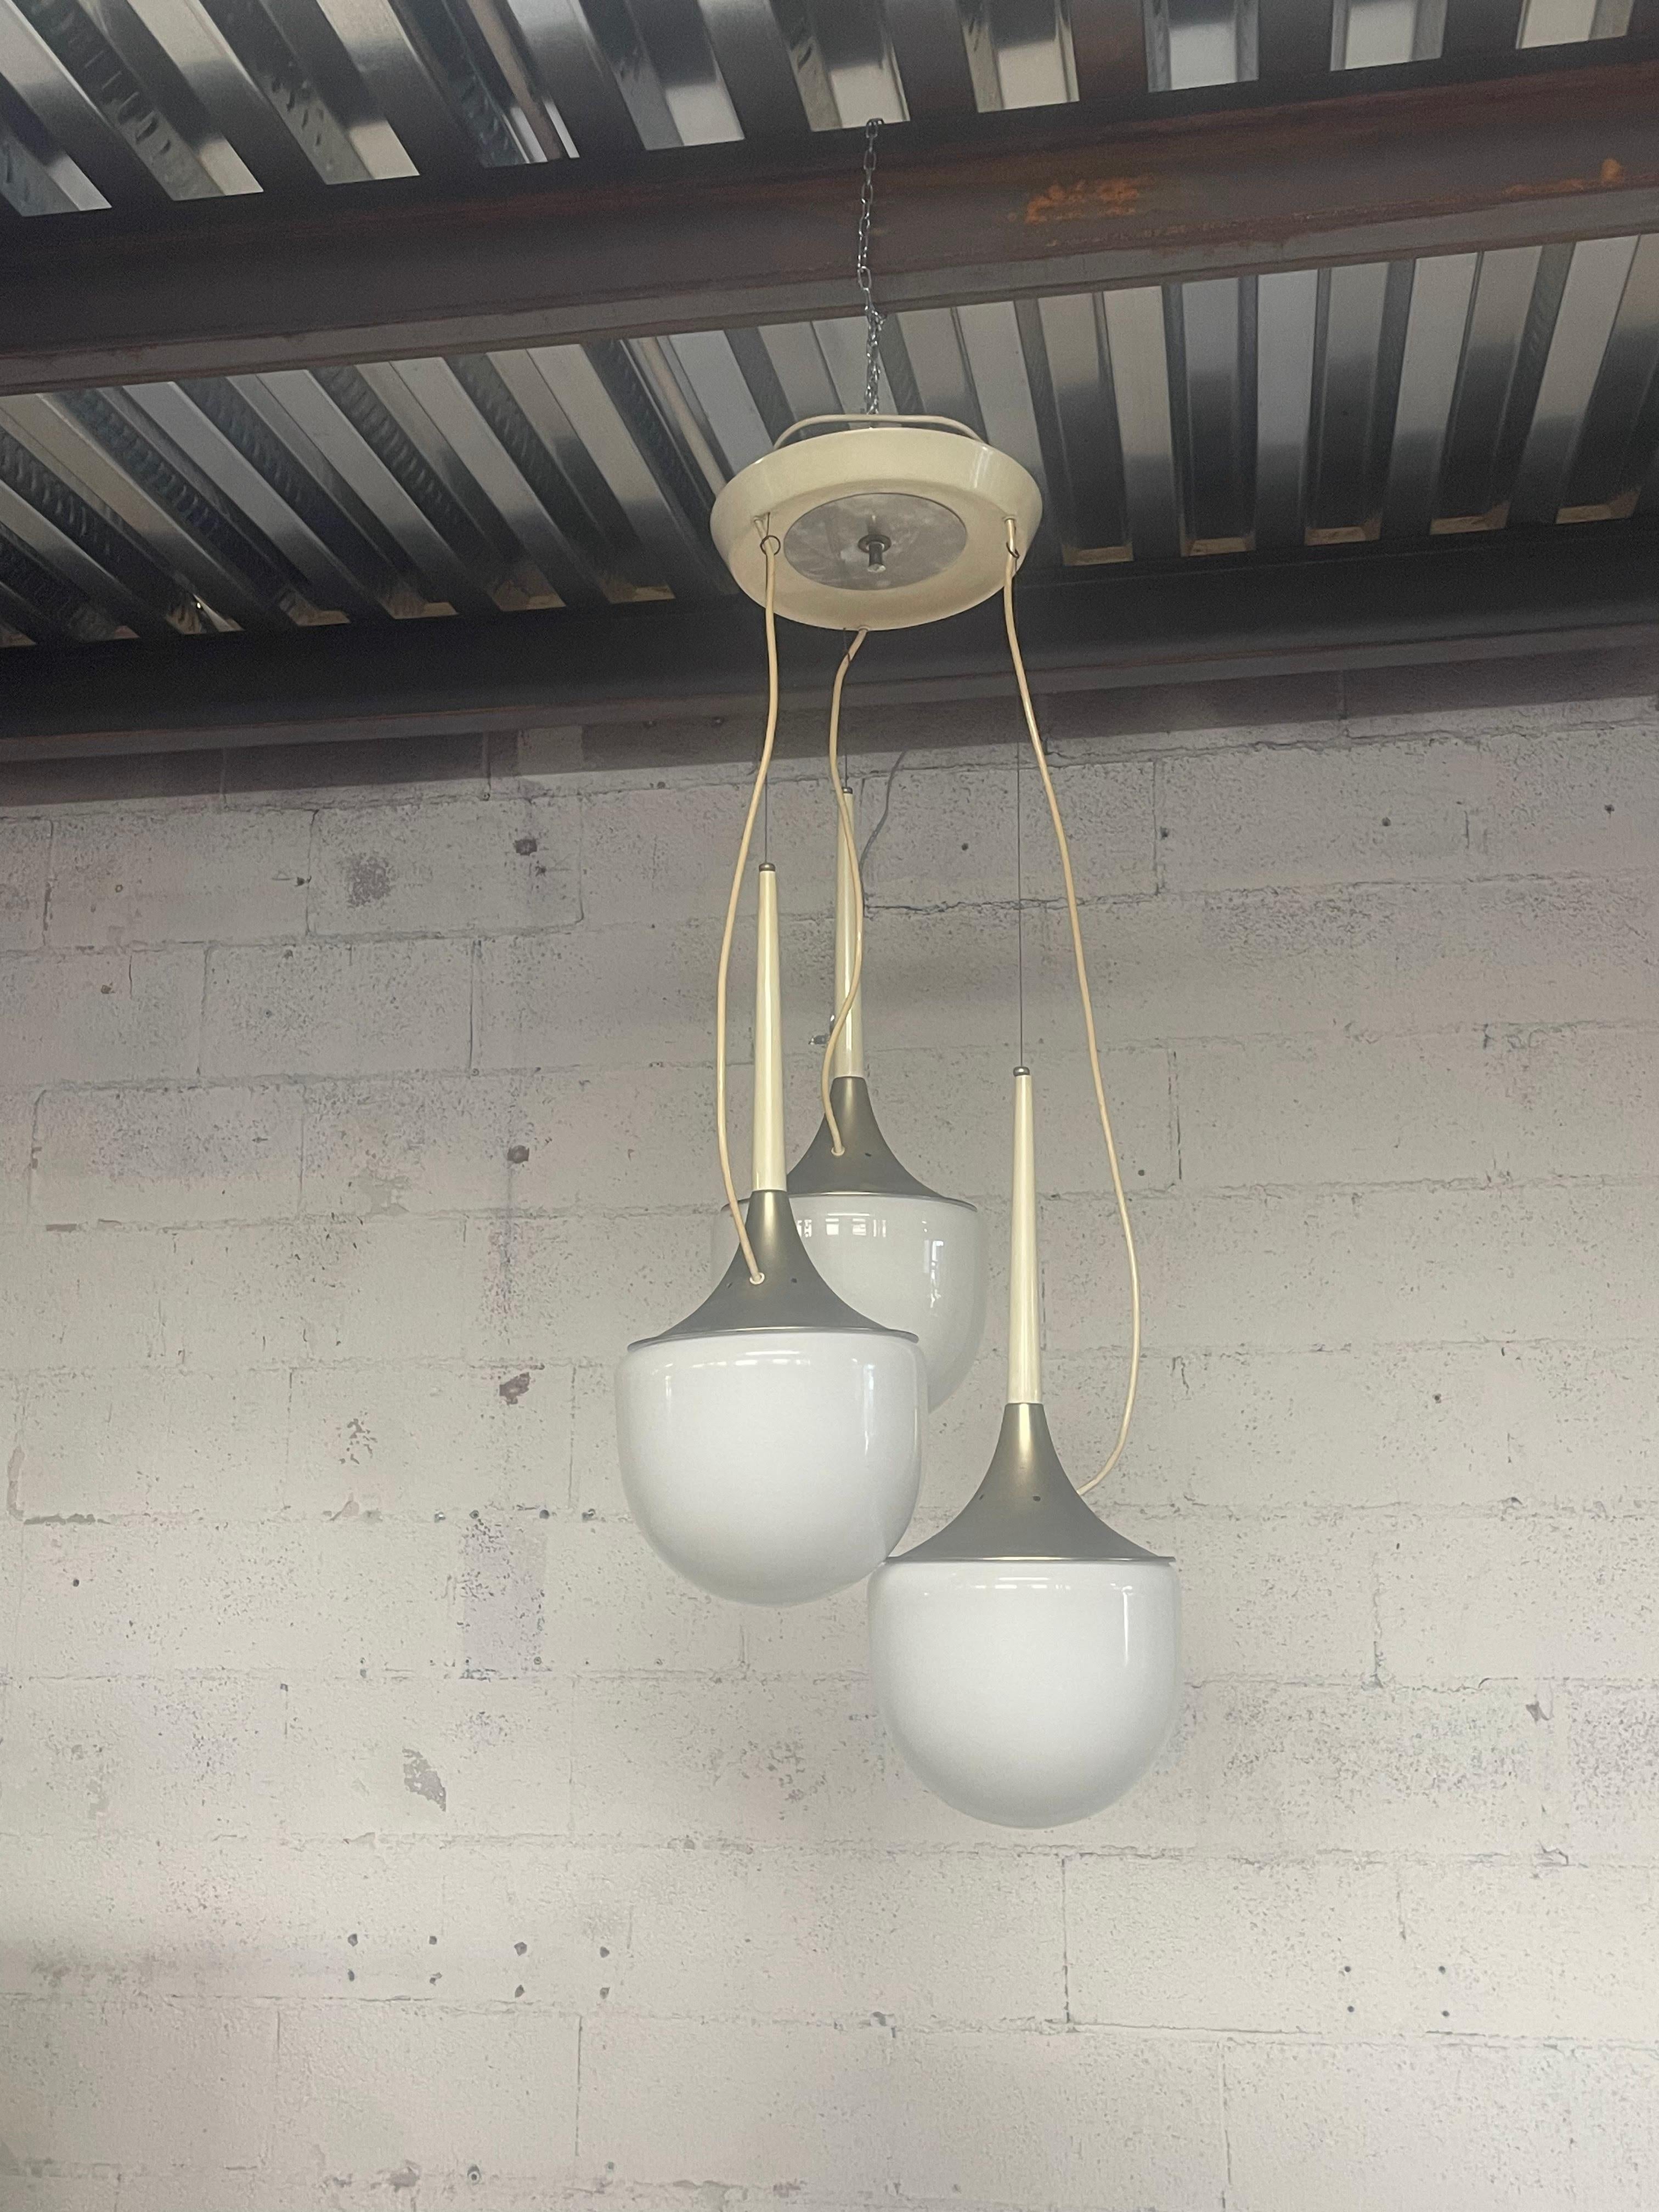 Grande lampe suspendue à trois lumières des années 1970 fabriquée par Esperia, une société italienne qui produit des éclairages décoratifs haut de gamme depuis 1952. Aujourd'hui, Esperia est une entreprise d'excellence, engagée quotidiennement dans